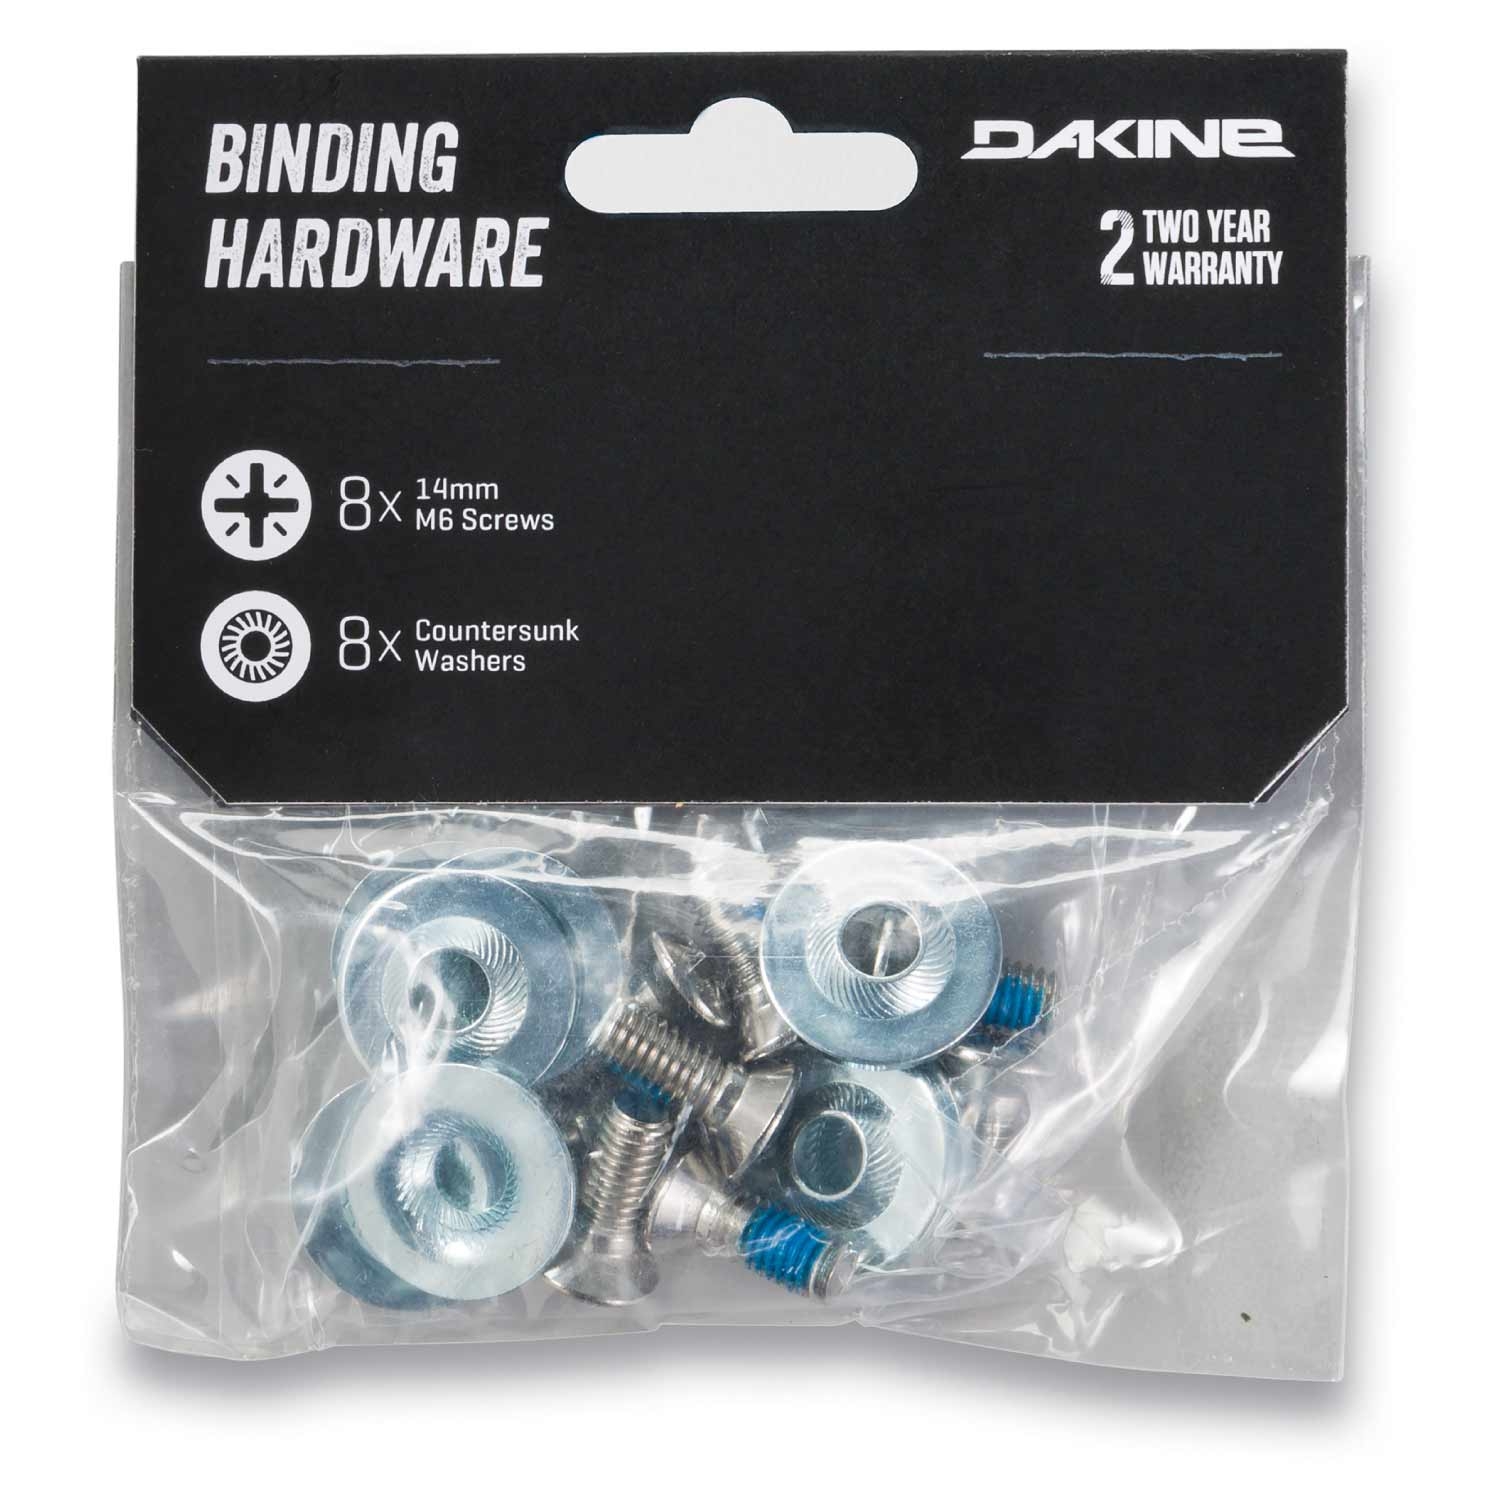 Dakine Binding Hardware Steel 2021